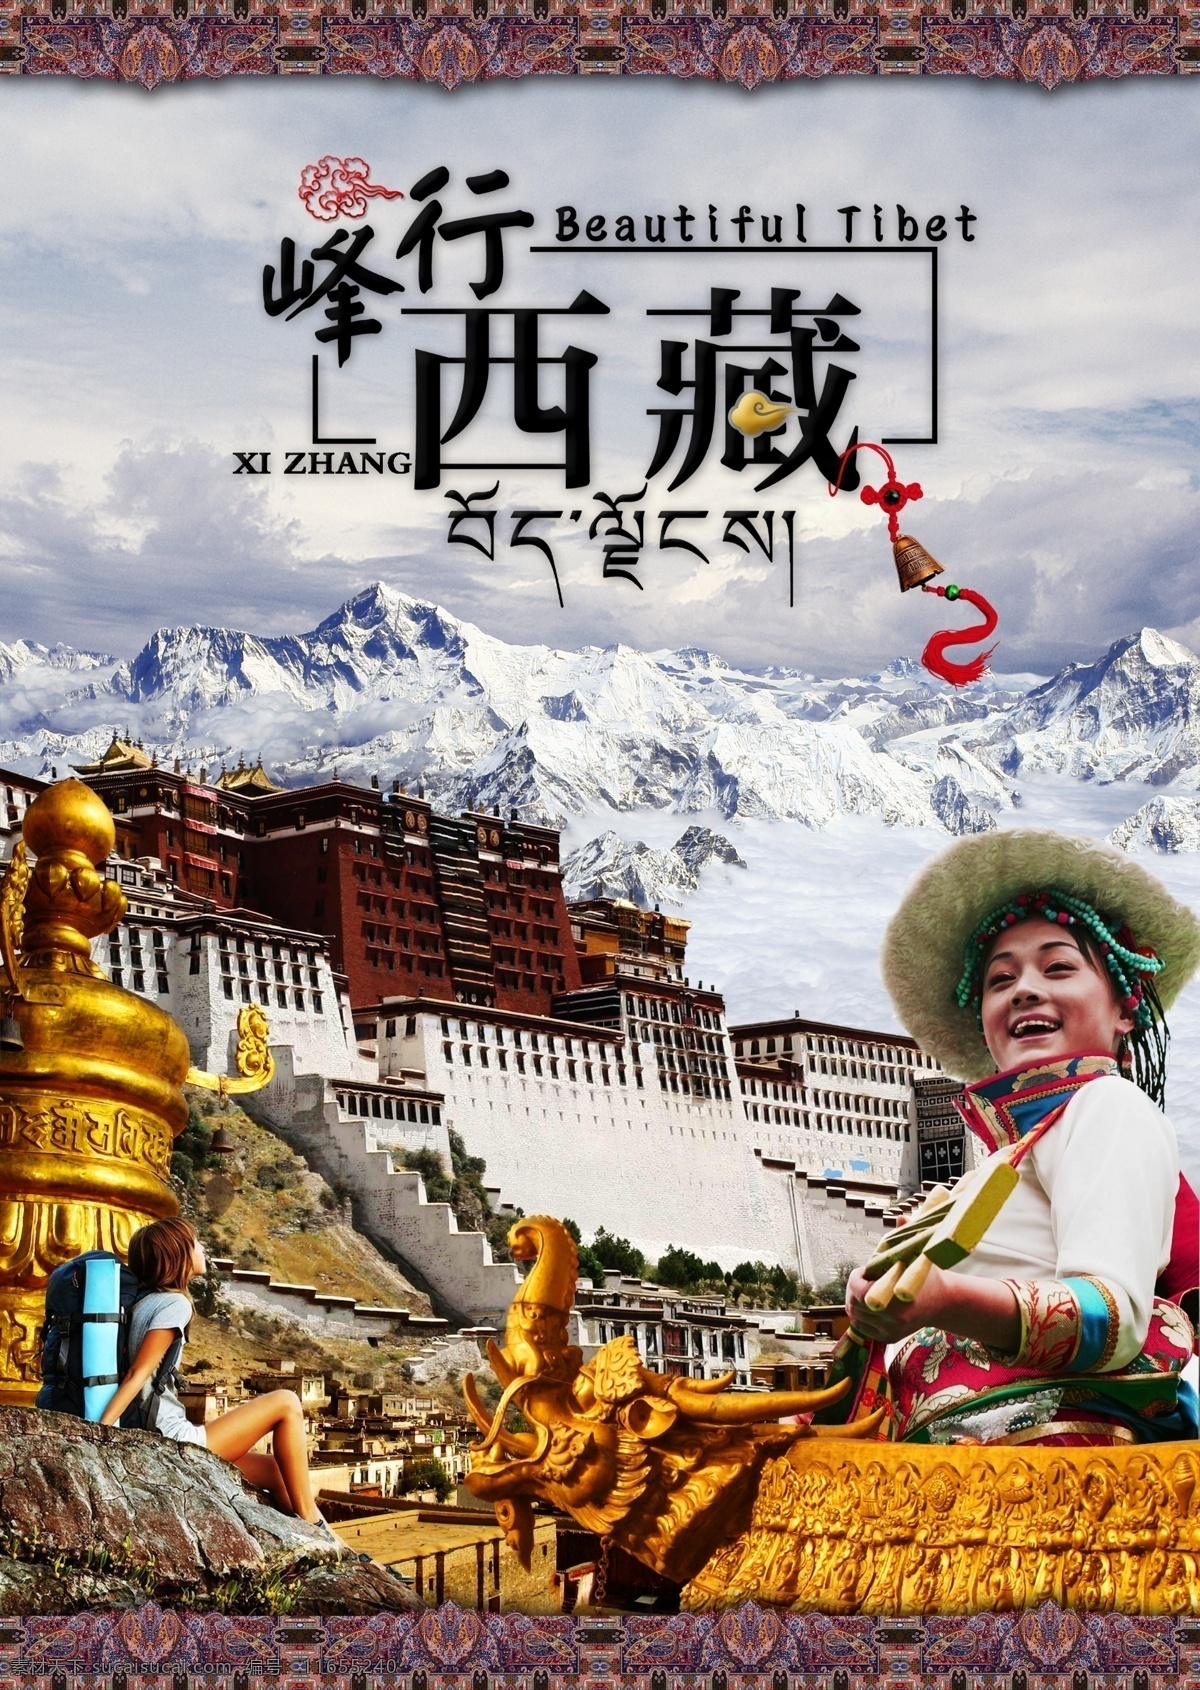 西藏 峰行西藏 西藏旅游 西藏少女 珠穆朗玛峰 布达拉宫 登高 远跳 传经筒 屋檐 藏式花纹 分层 源文件